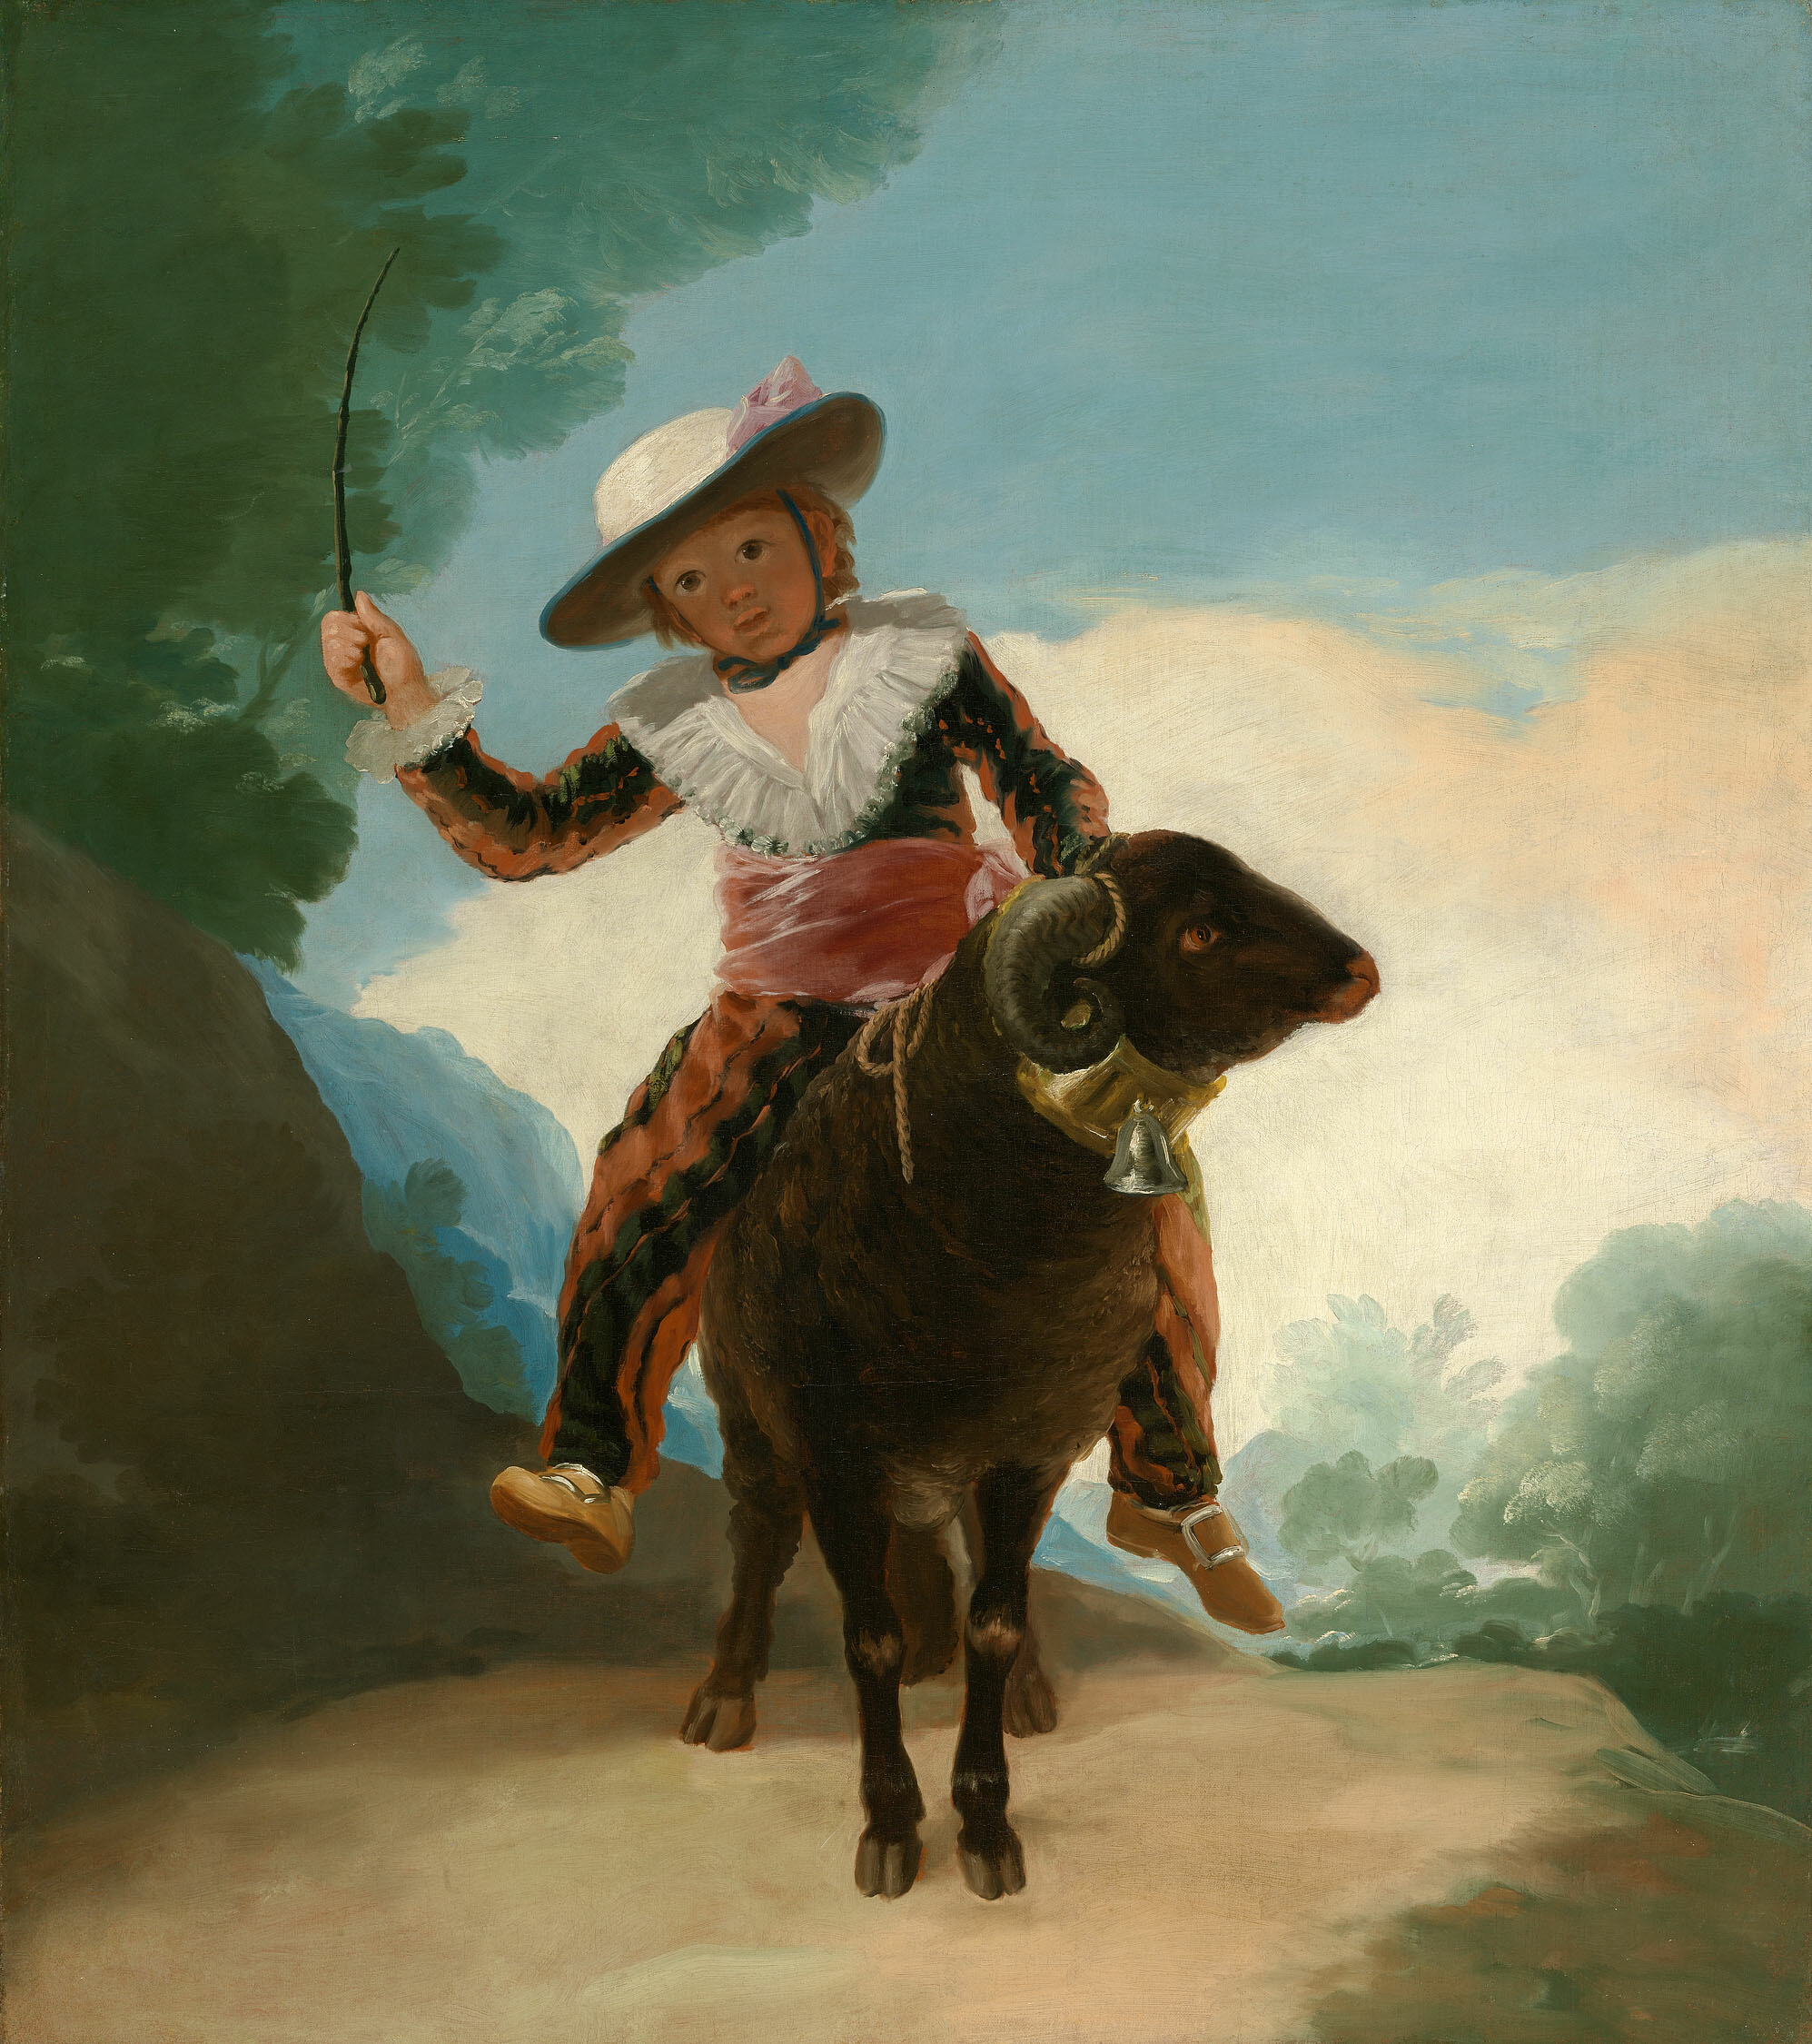 羊に乗る少年 by Francisco Goya - 1786/87年 - 127.2 × 112.1 cm 